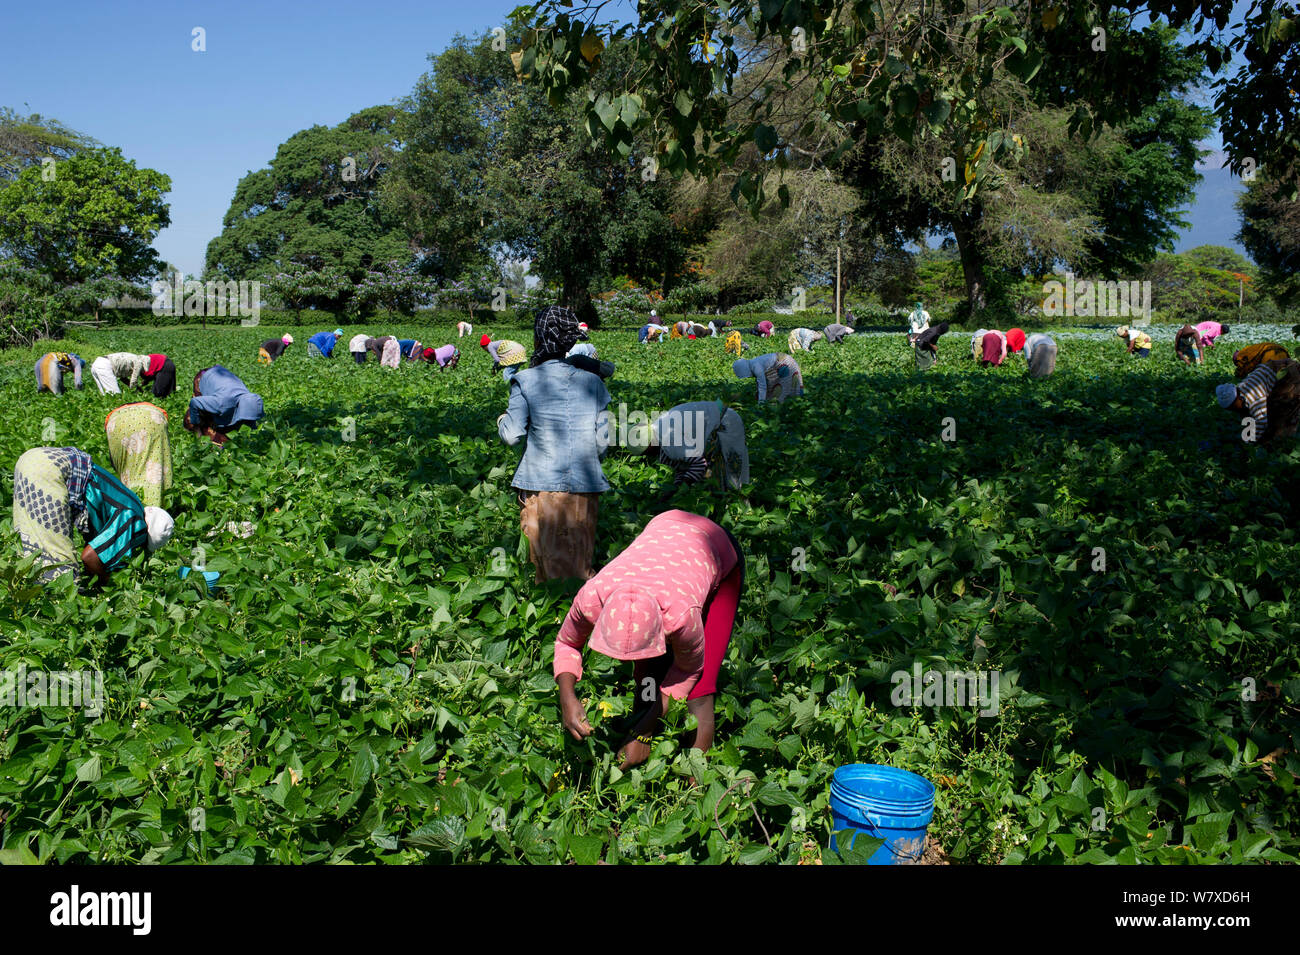 Les femmes dans le champ de la récolte de haricots verts (Phaseolus vulgaris) sur une ferme commerciale. Les femmes portent des vêtements traditionnels (&# 39;kangas&# 39# 39 ; et &&# 39;kitenge ;). Tanzanie, Afrique de l'Est. Novembre 2012. Banque D'Images